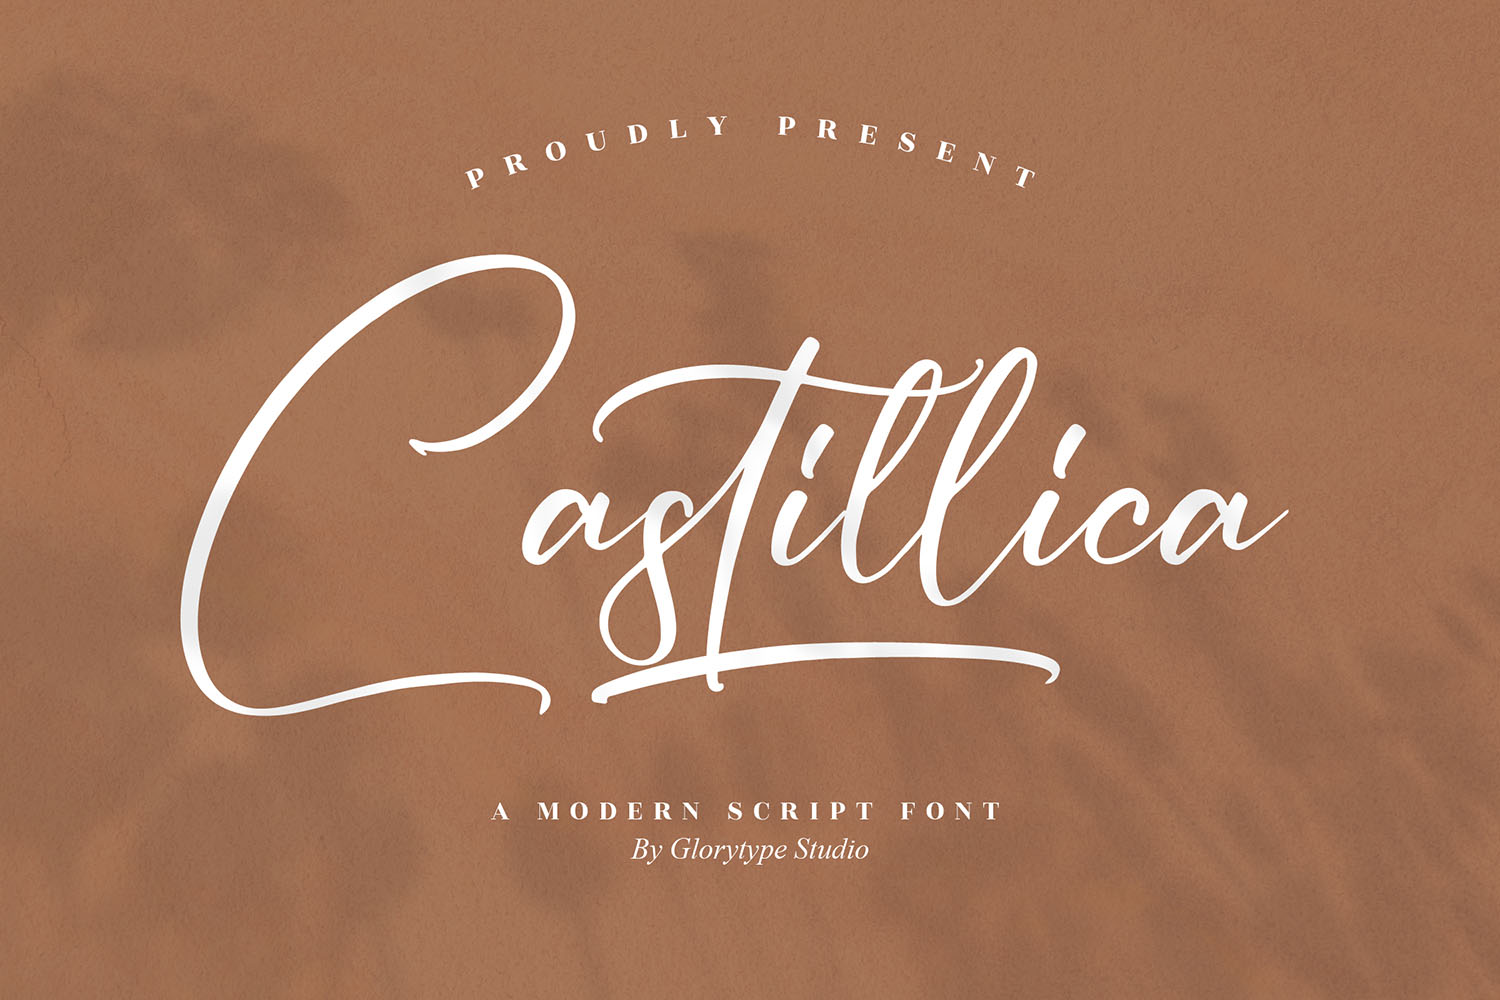 Castillica Free Font